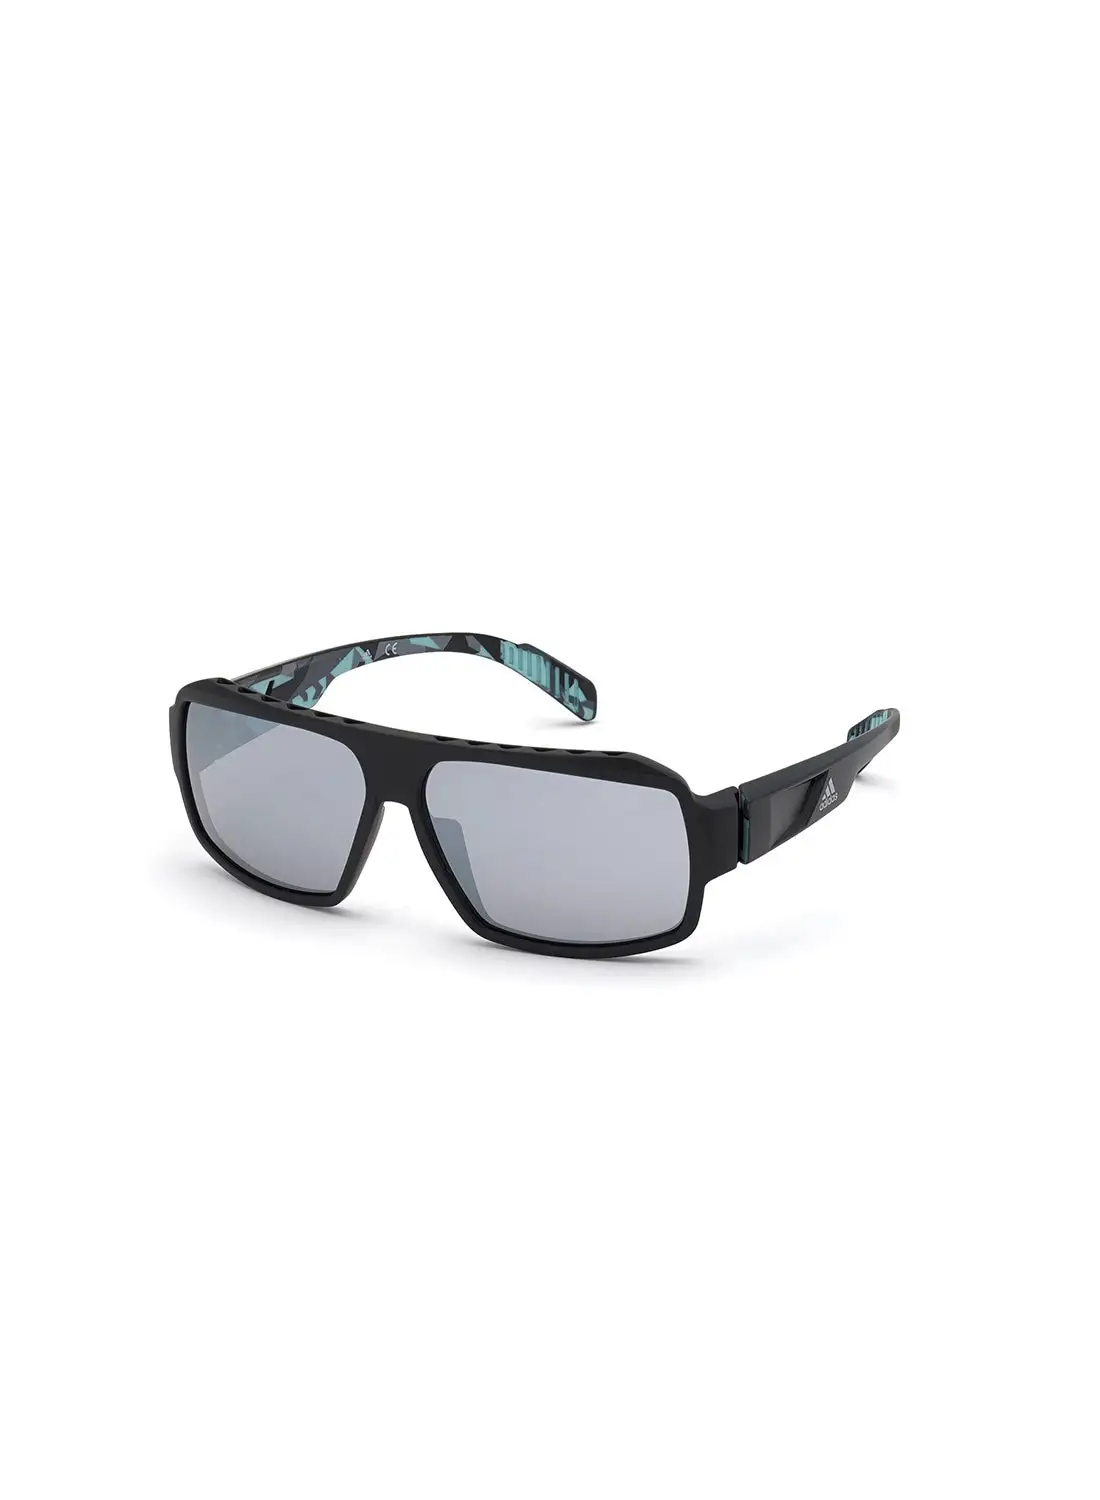 نظارة شمسية للجنسين من اديداس للحماية من الأشعة فوق البنفسجية - SP002602C62 - مقاس العدسة: 62 ملم